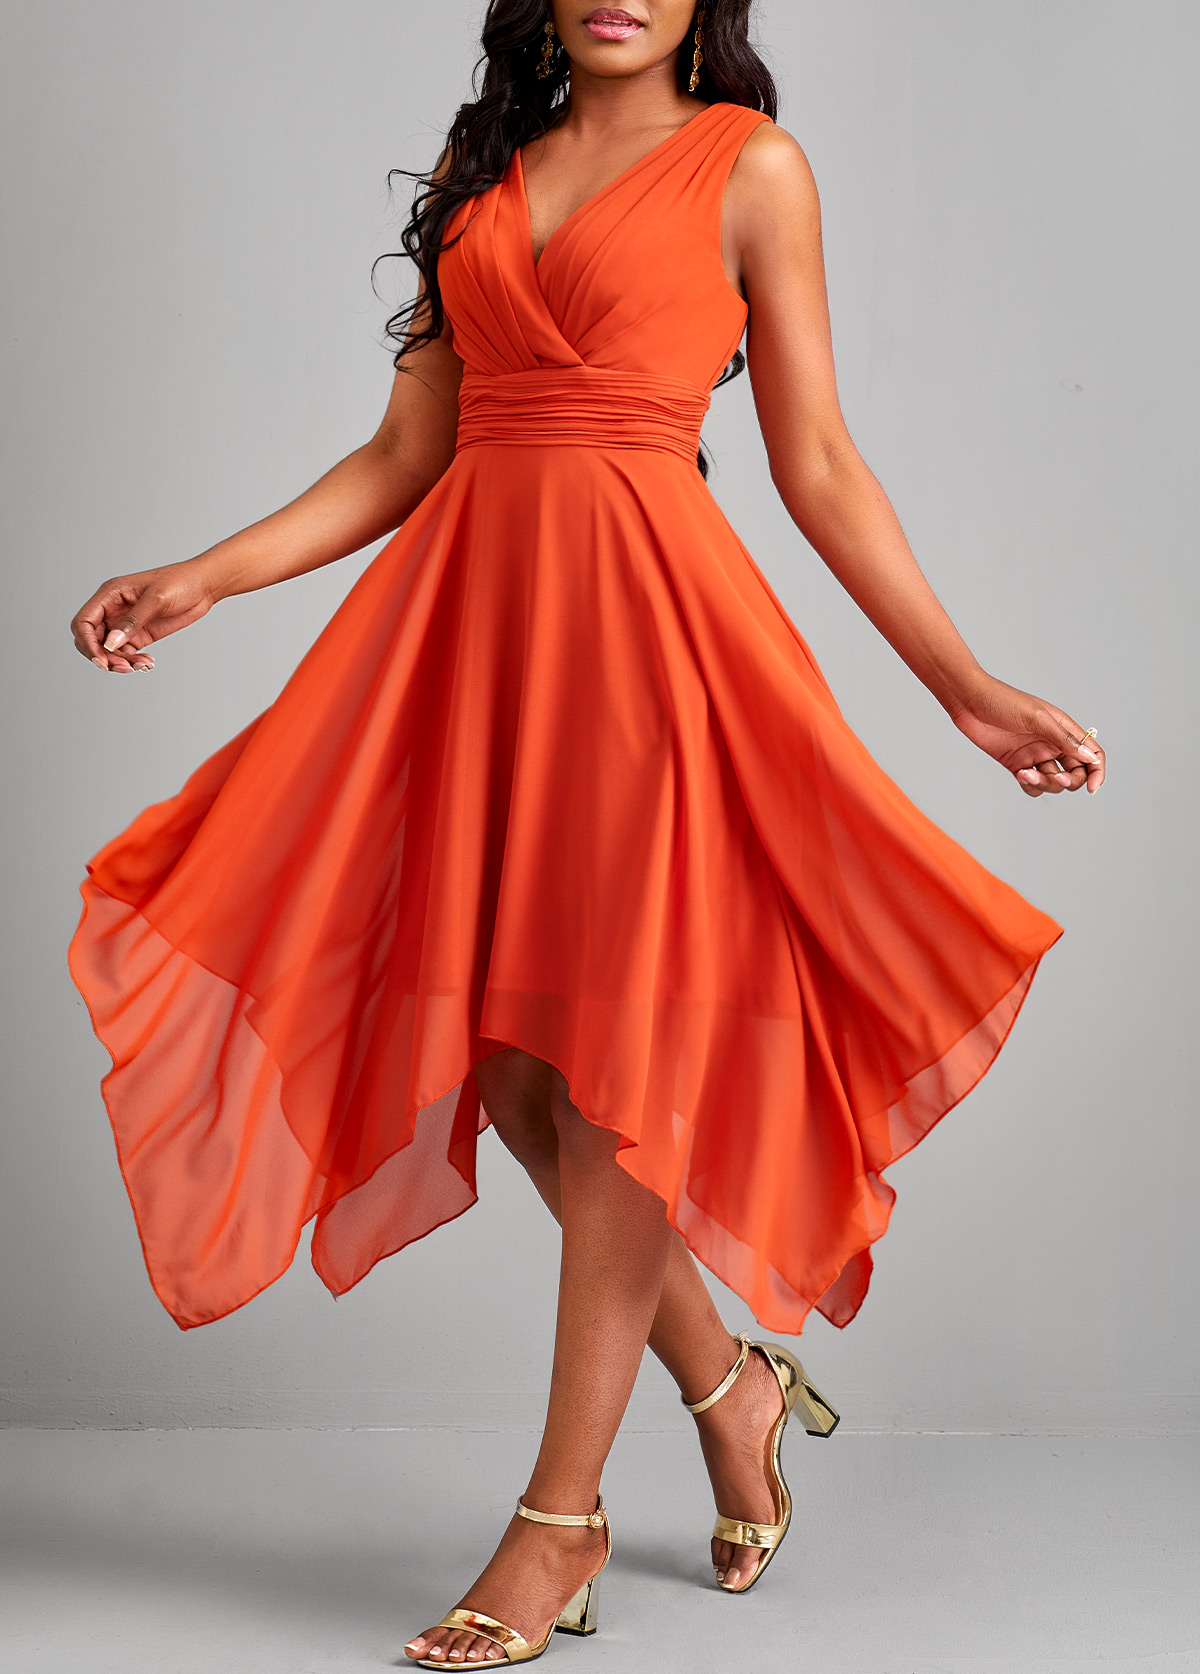 Rotita ärmelloses Kleid mit Taschentuchsaum und orangefarbenem V-Ausschnitt